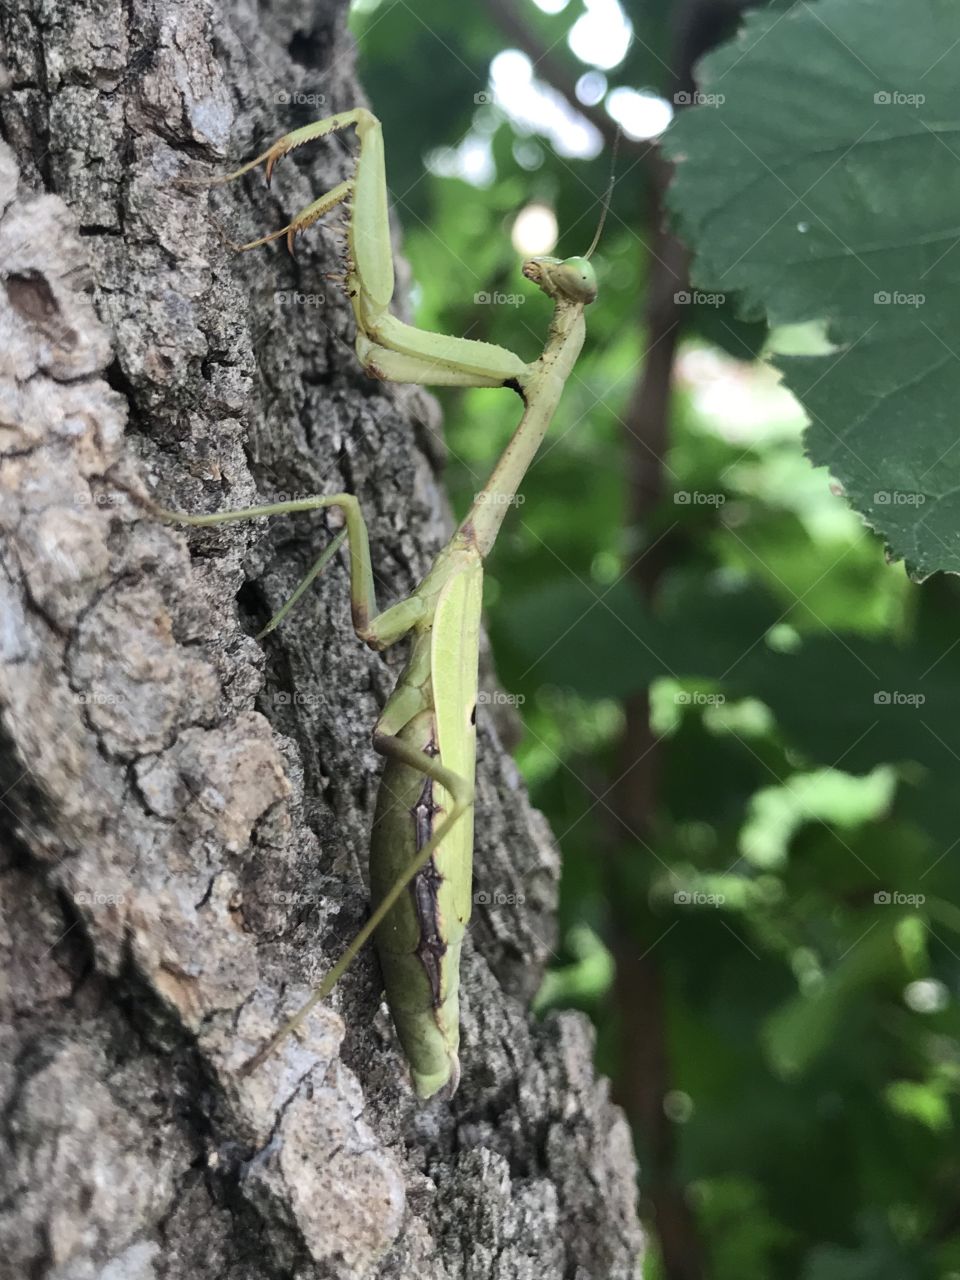 Praying Mantis on a tree